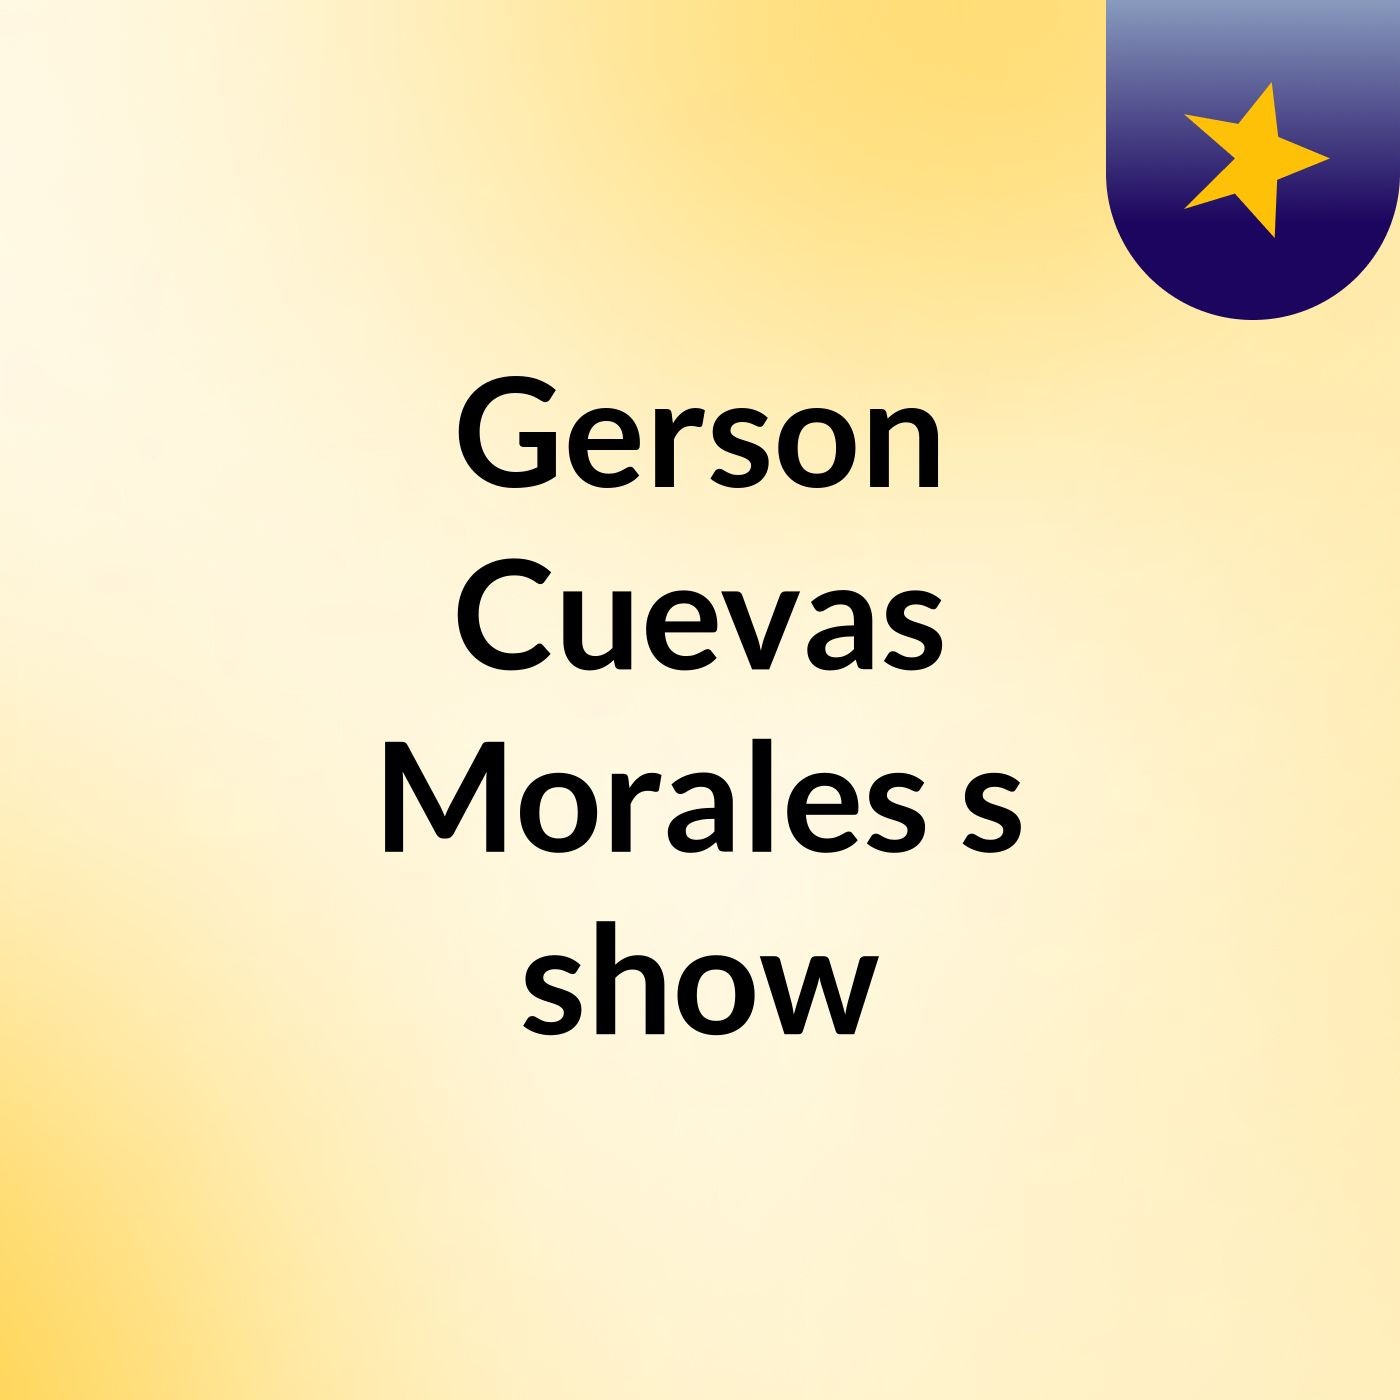 Gerson Cuevas Morales's show